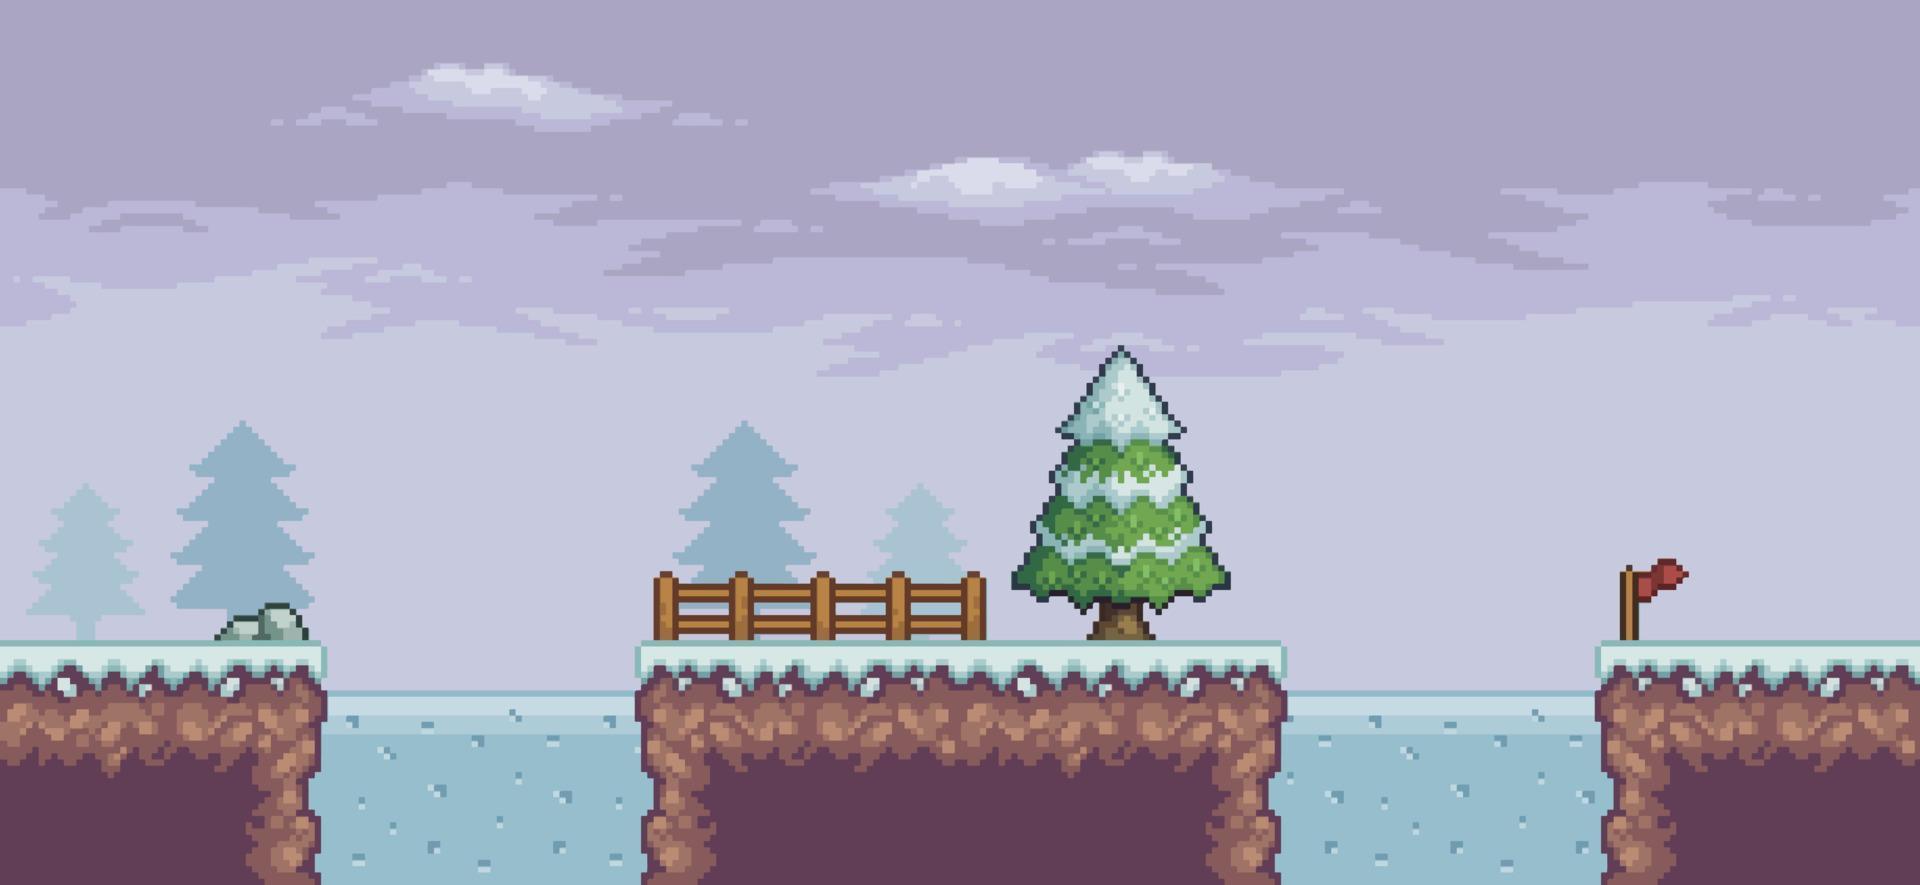 pixel art game scene in sneeuw met pijnbomen, brug, hek, bevroren meer en wolken 8 bit vector background